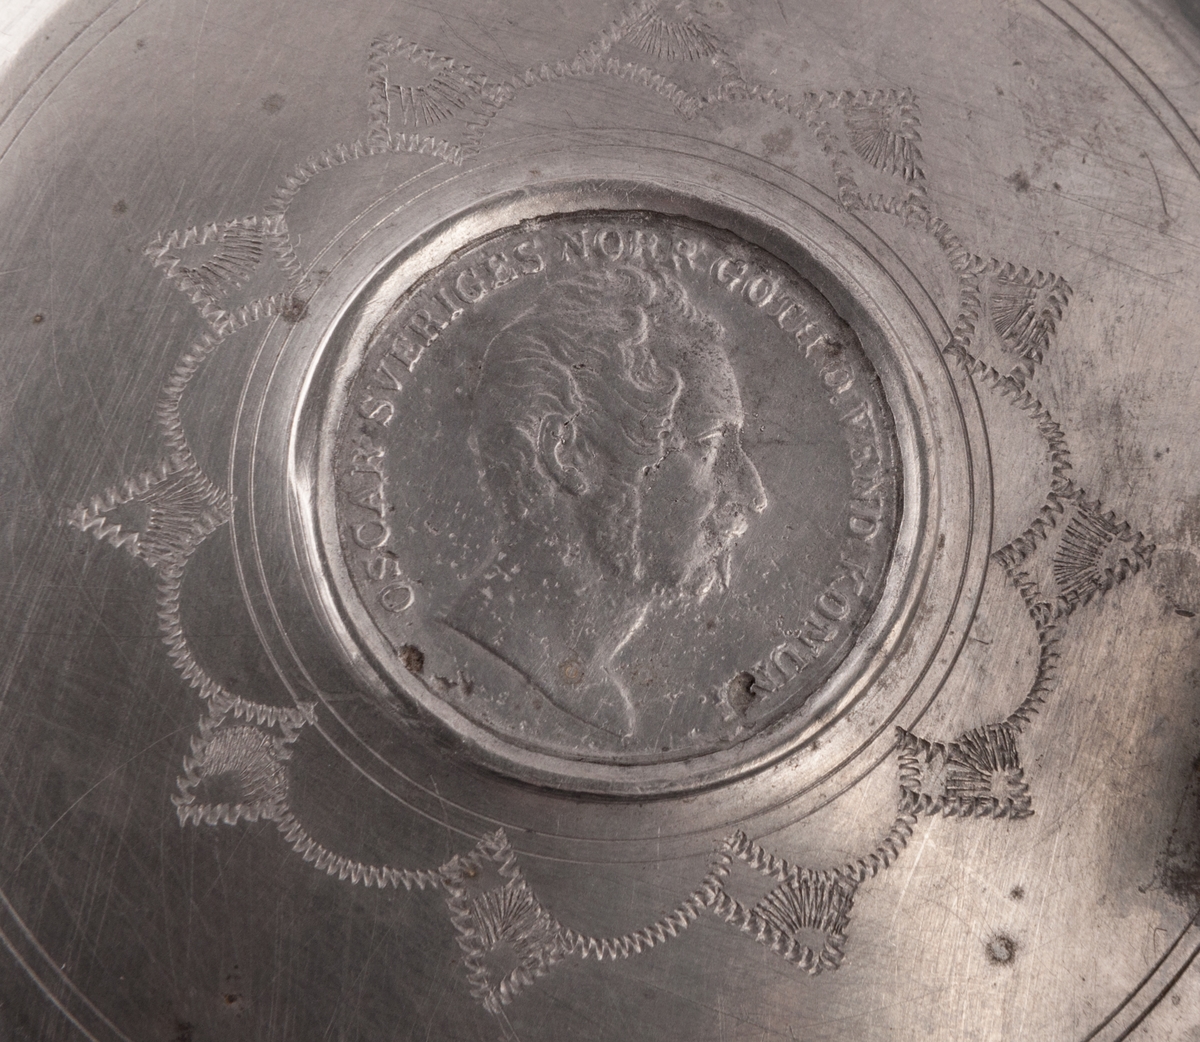 I botten svisselerat "S.F.F.S".
På sidorna blommor, krona, m.m. 
Märkning: Oval under med påbörjade bokstäver: "I..."
På locket mynt med Oskar I:s bild.
Dubbelstämplad med "GS"
Stämplad: "R4"=1847